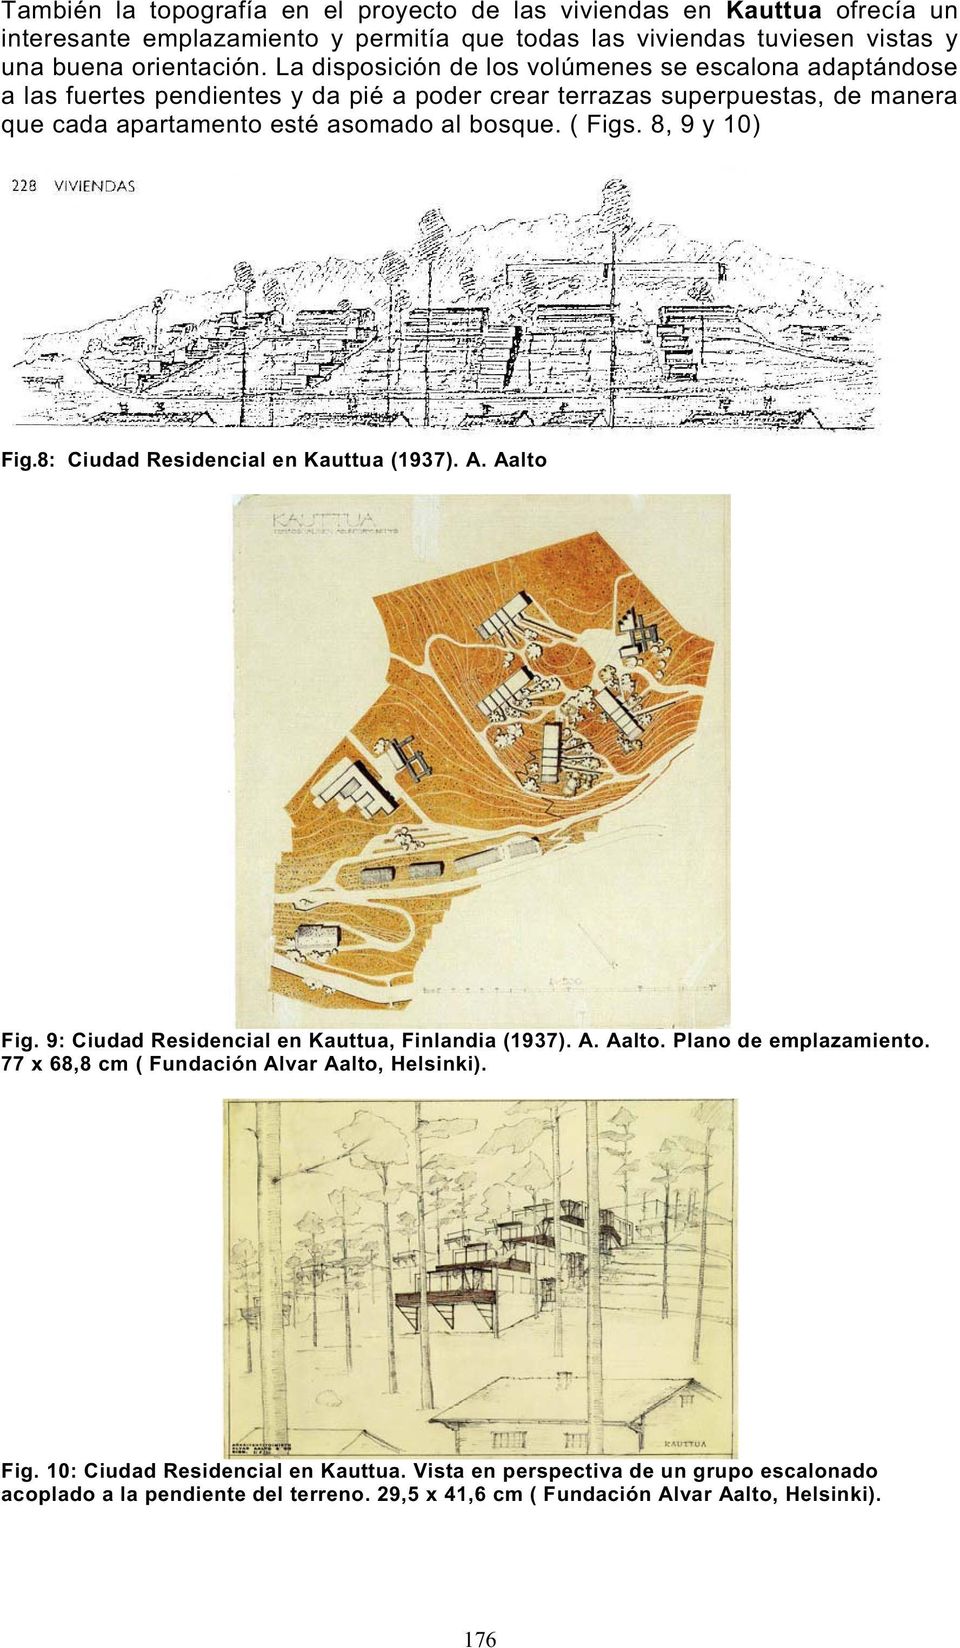 ( Figs. 8, 9 y 10) Fig.8: Ciudad Residencial en Kauttua (1937). A. Aalto Fig. 9: Ciudad Residencial en Kauttua, Finlandia (1937). A. Aalto. Plano de emplazamiento.